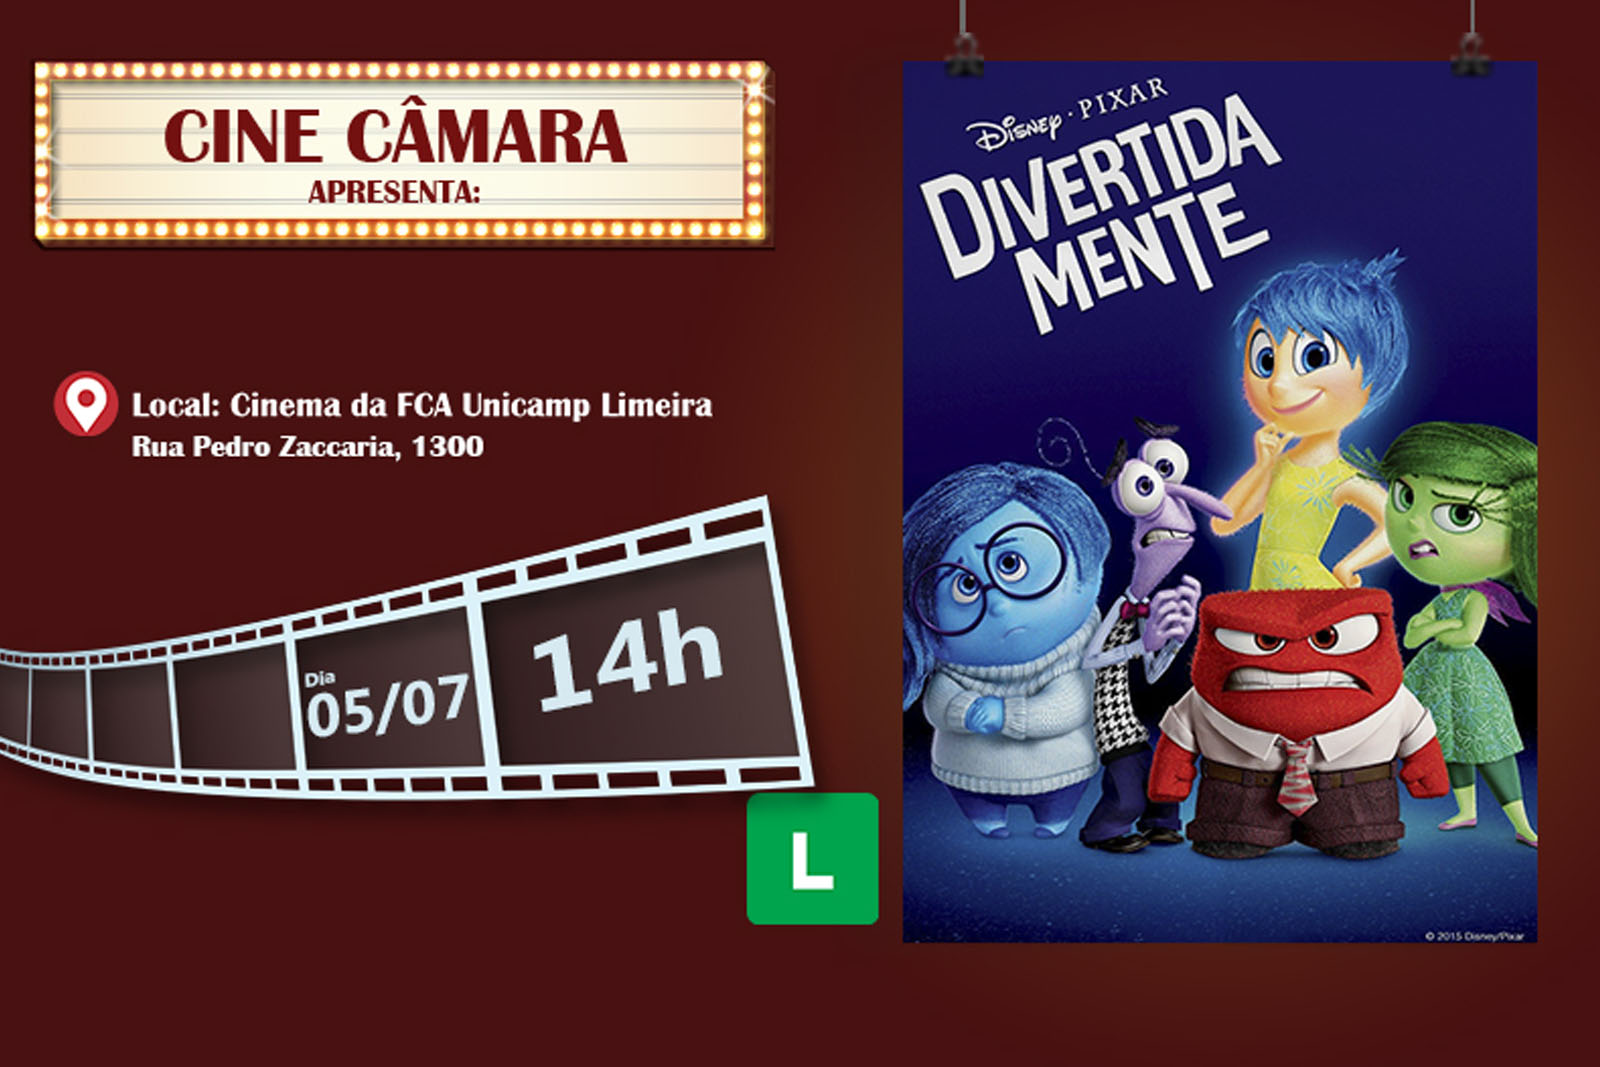 Divertida Mente (2015), Melhores Filmes do Cinema